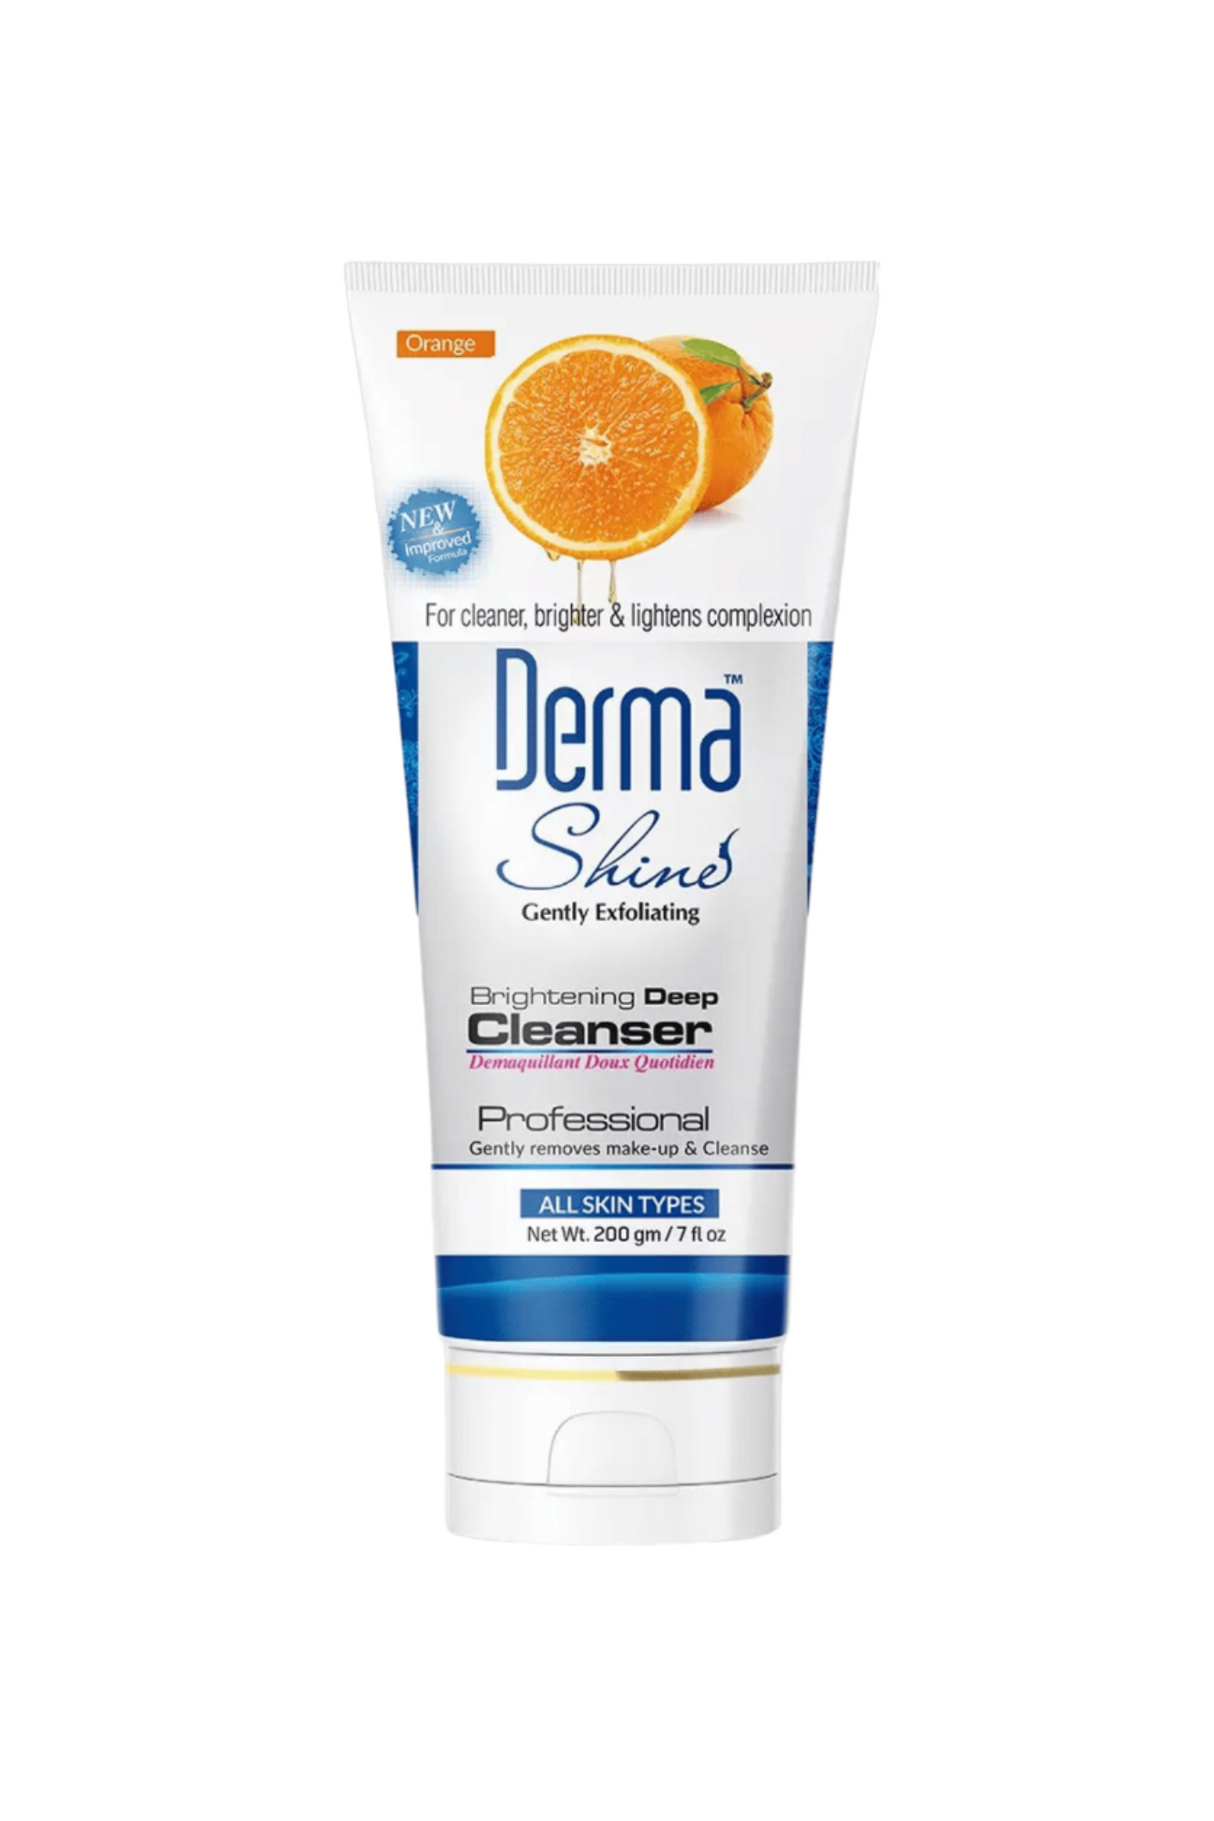 derma shine cleanser brightening 200g